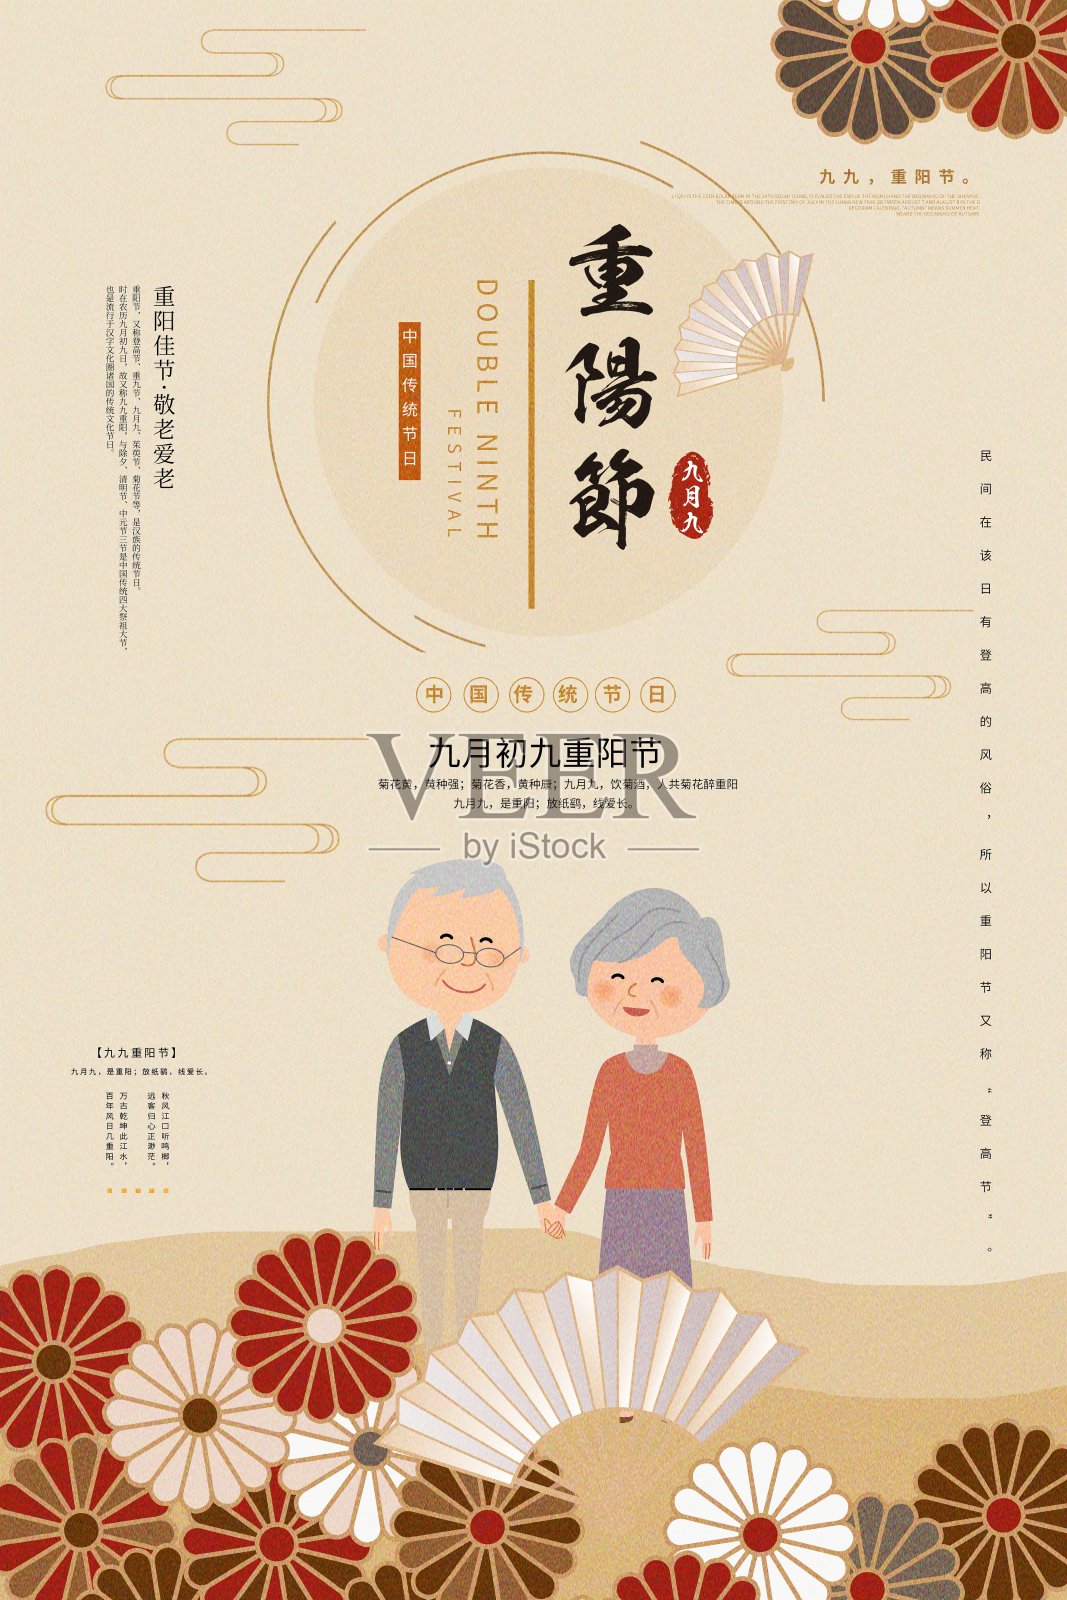 中国风重阳节节日海报设计模板素材